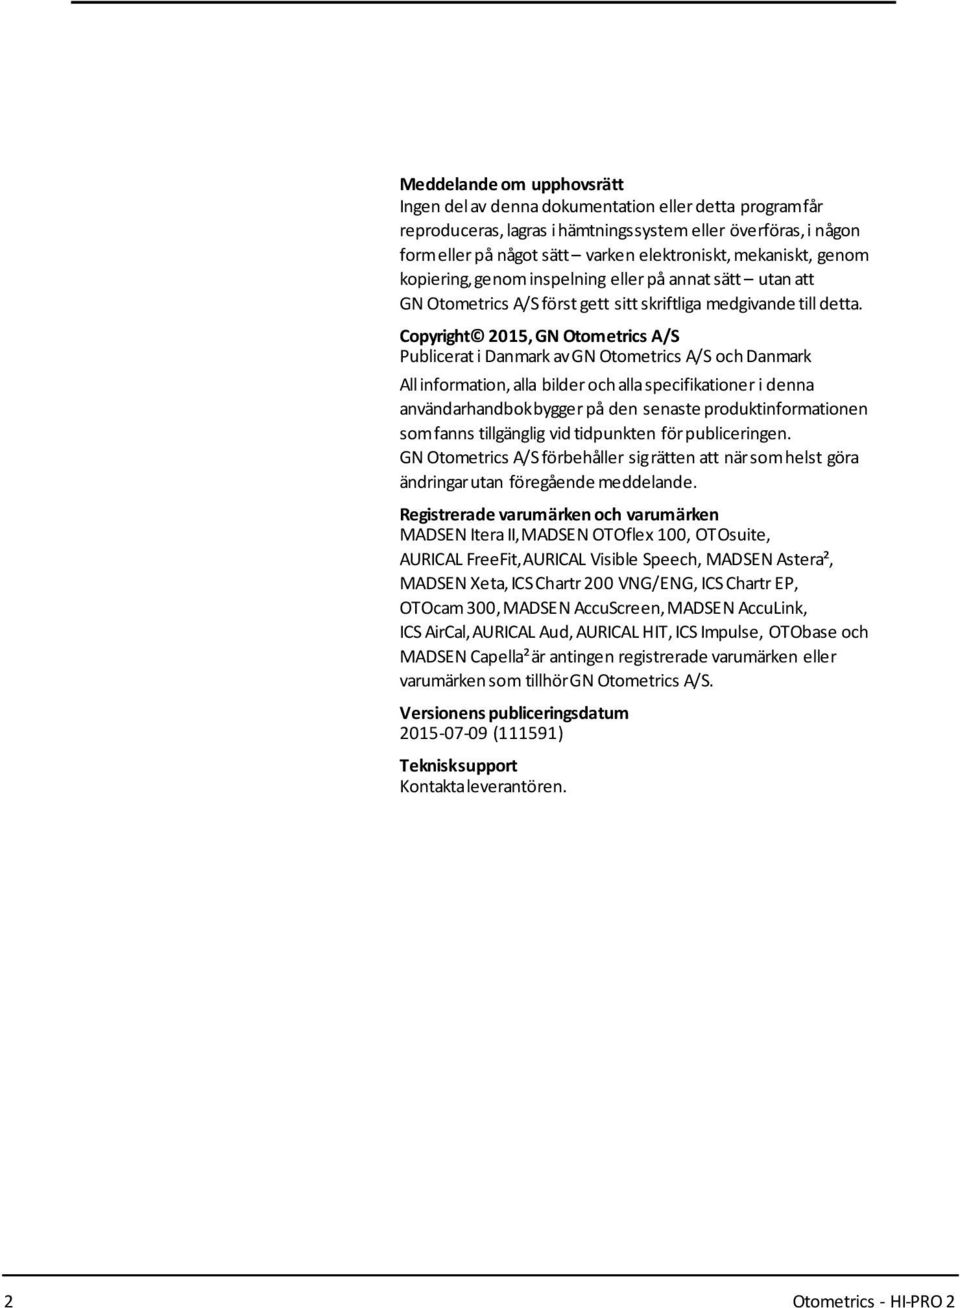 Copyright 2015, GN Otometrics A/S Publicerati Danmark avgn Otometrics A/S och Danmark Allinformation, alla bilder och allaspecifikationer i denna användarhandbokbygger på den